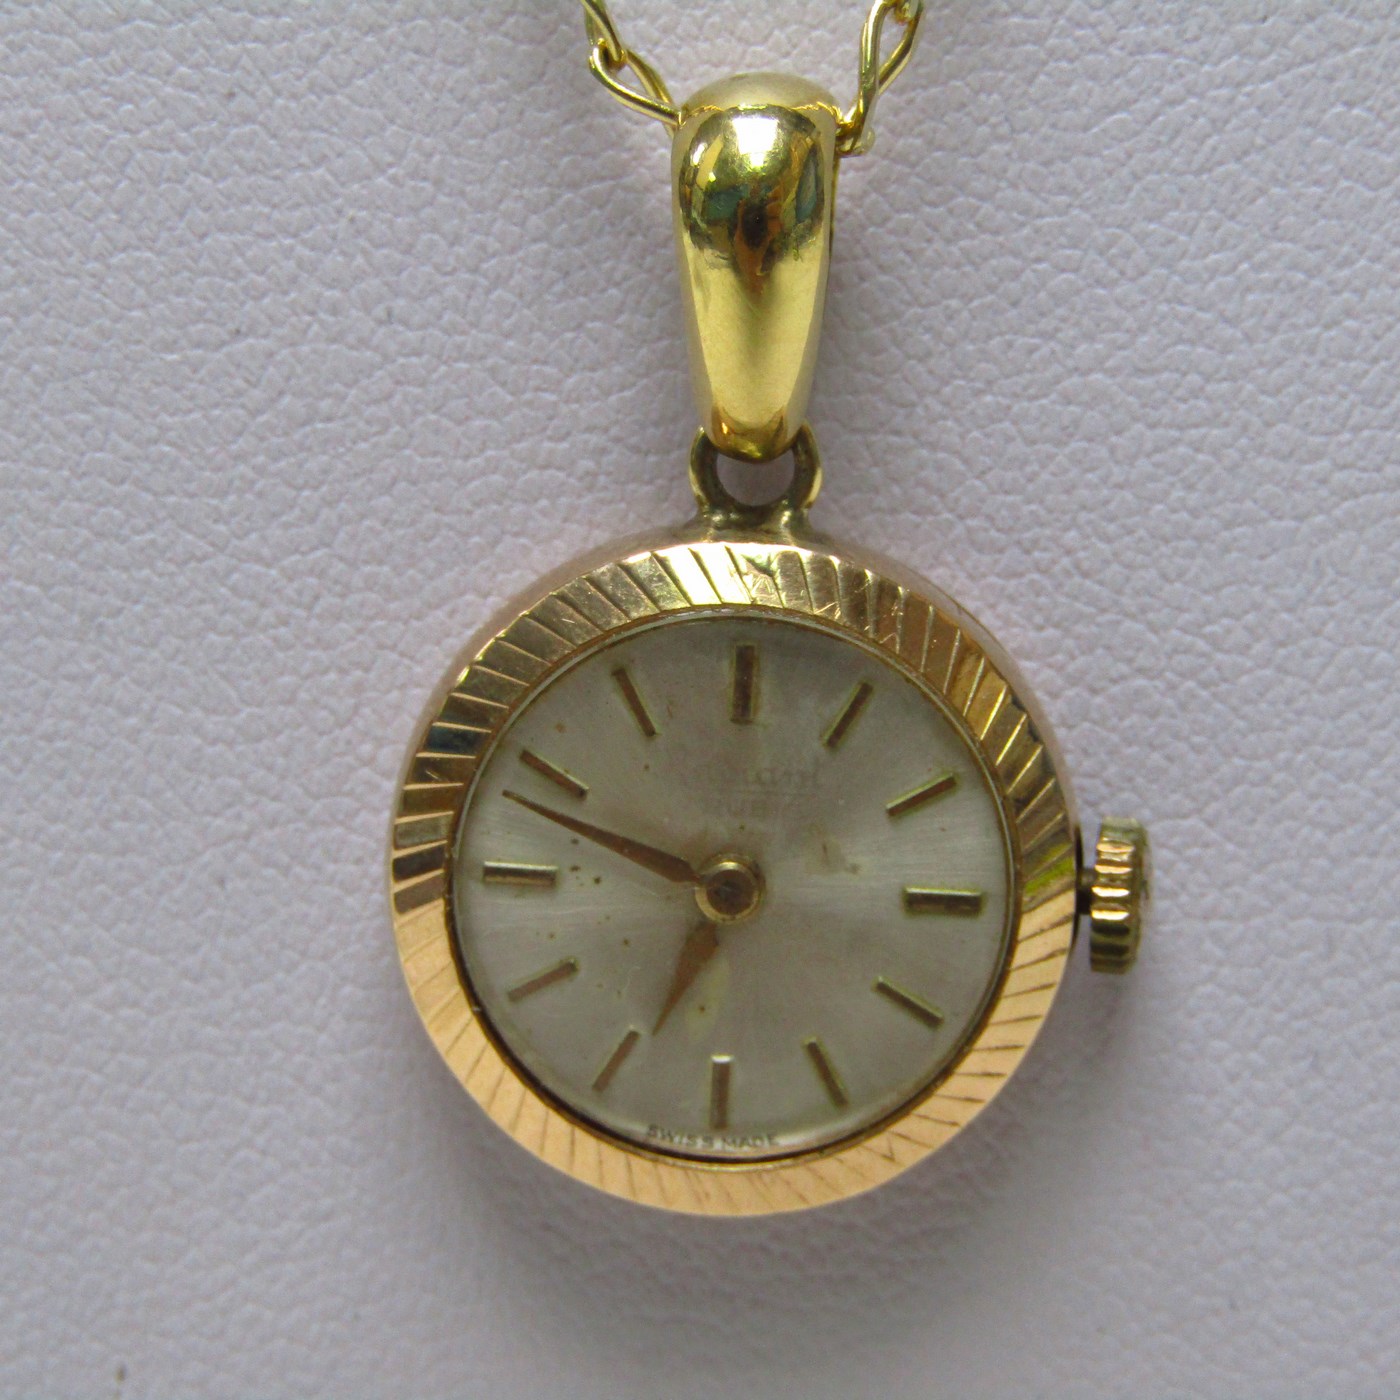 Cadena de Oro 18k. con Reloj Suizo de colgar, Radiant INCABLOC, lepine y remontoir. Pps. siglo XX.